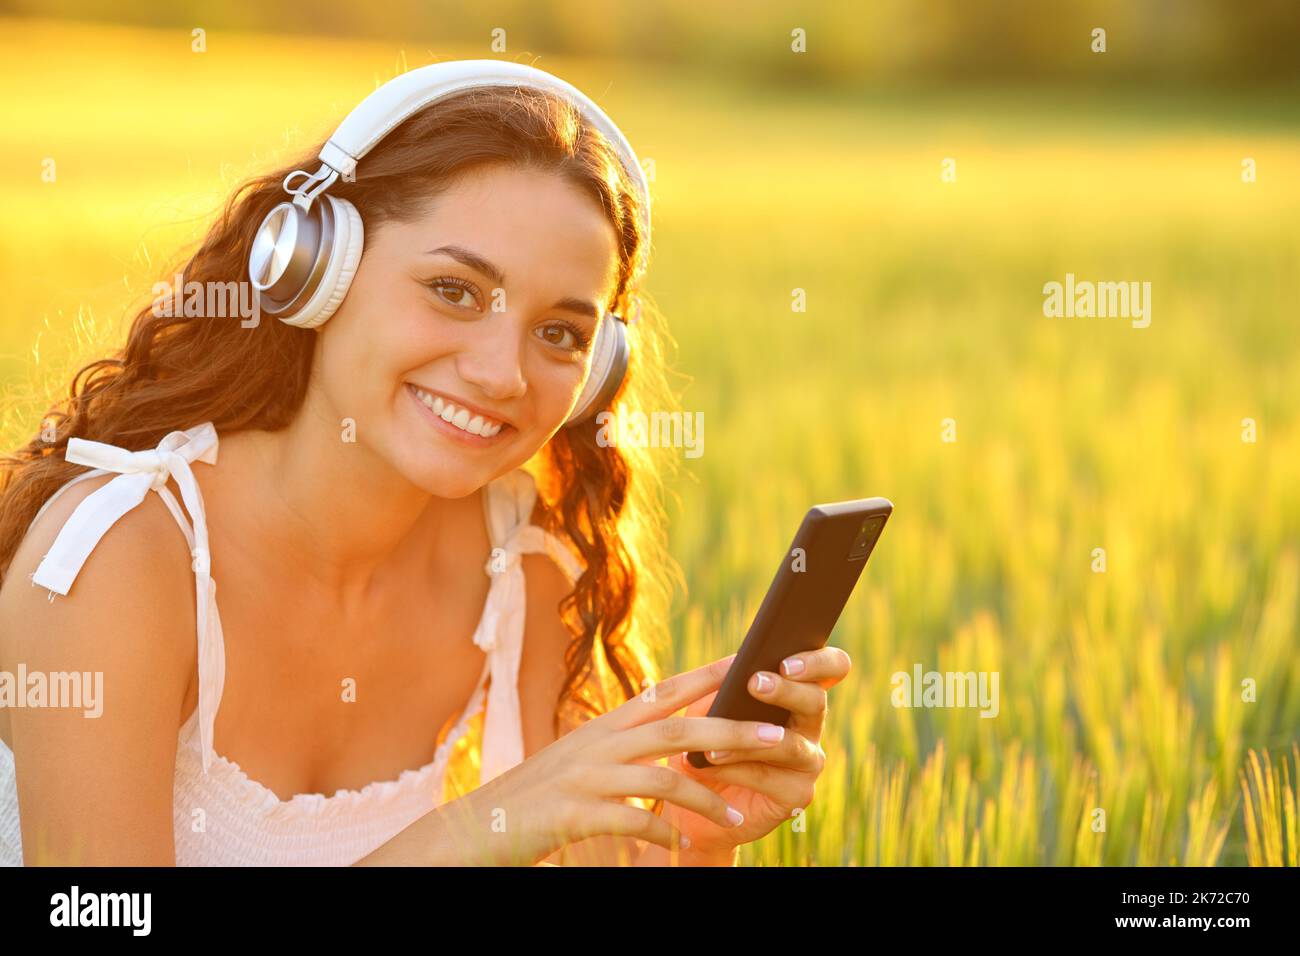 Eine glückliche Frau, die Kopfhörer trägt und Musik hört, sieht Sie auf einem Feld an Stockfoto